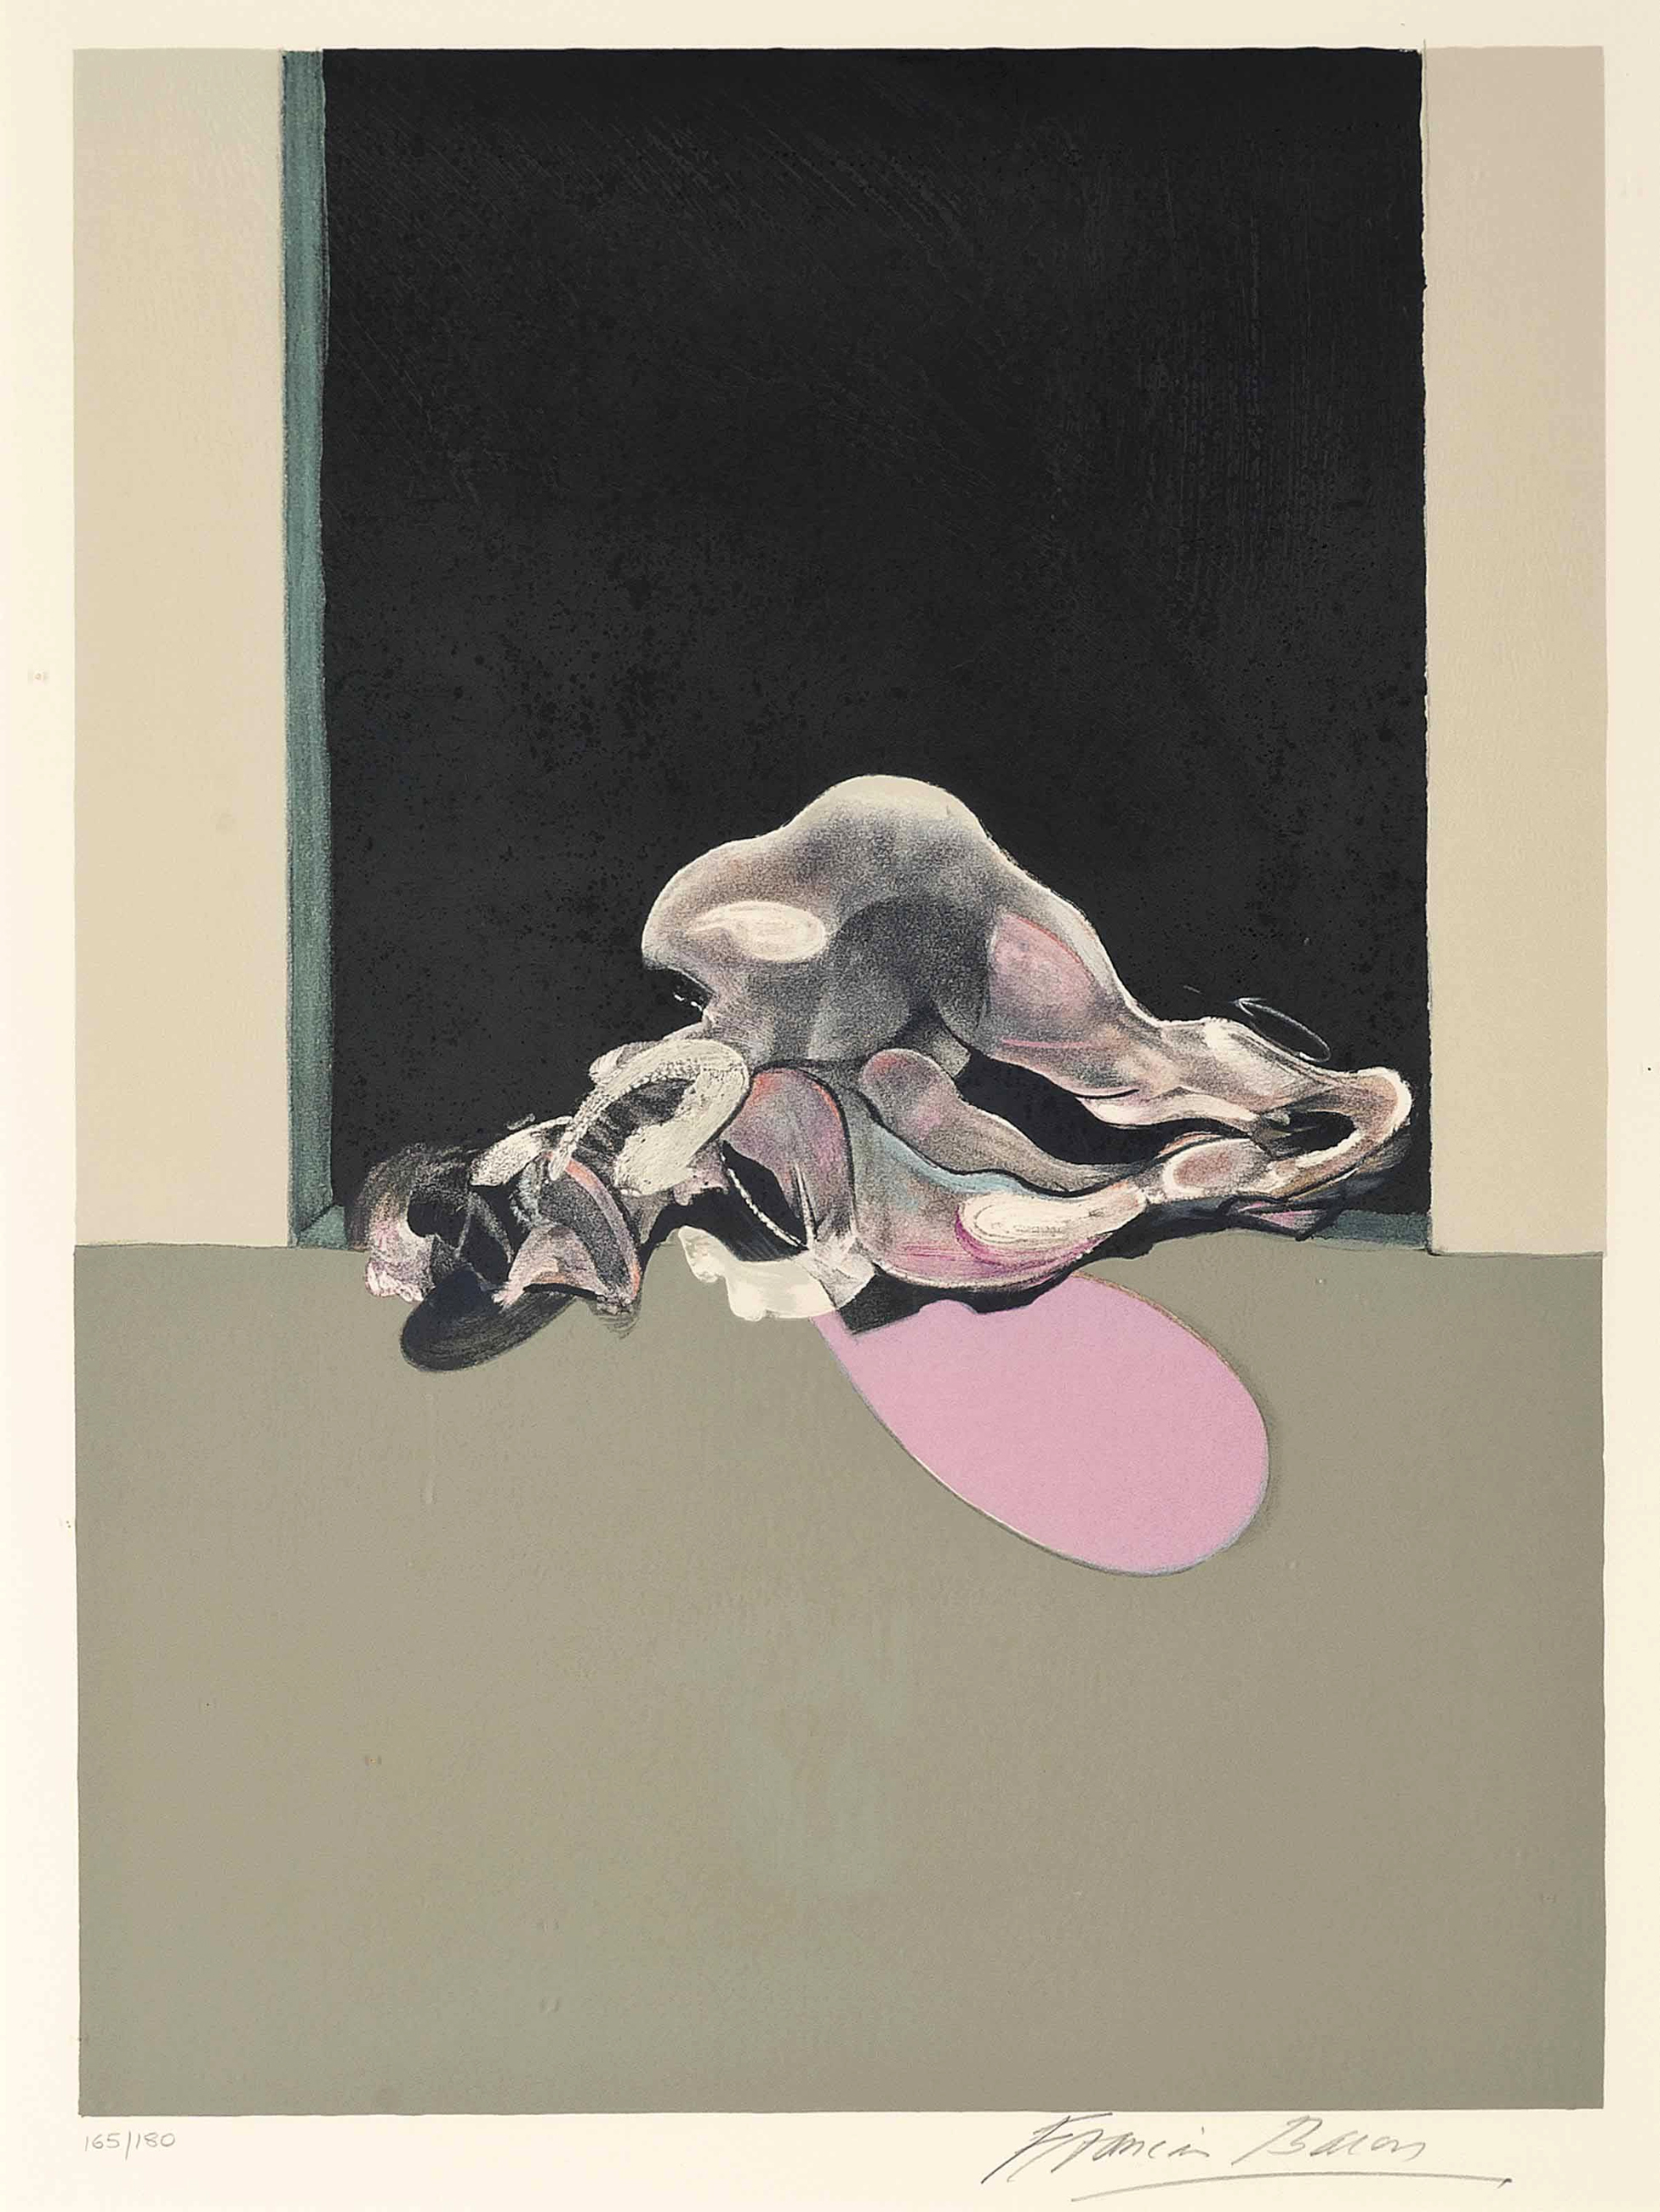 弗朗西斯·培根Francis Bacon油画作品高清图集抽象怪诞绘画资料